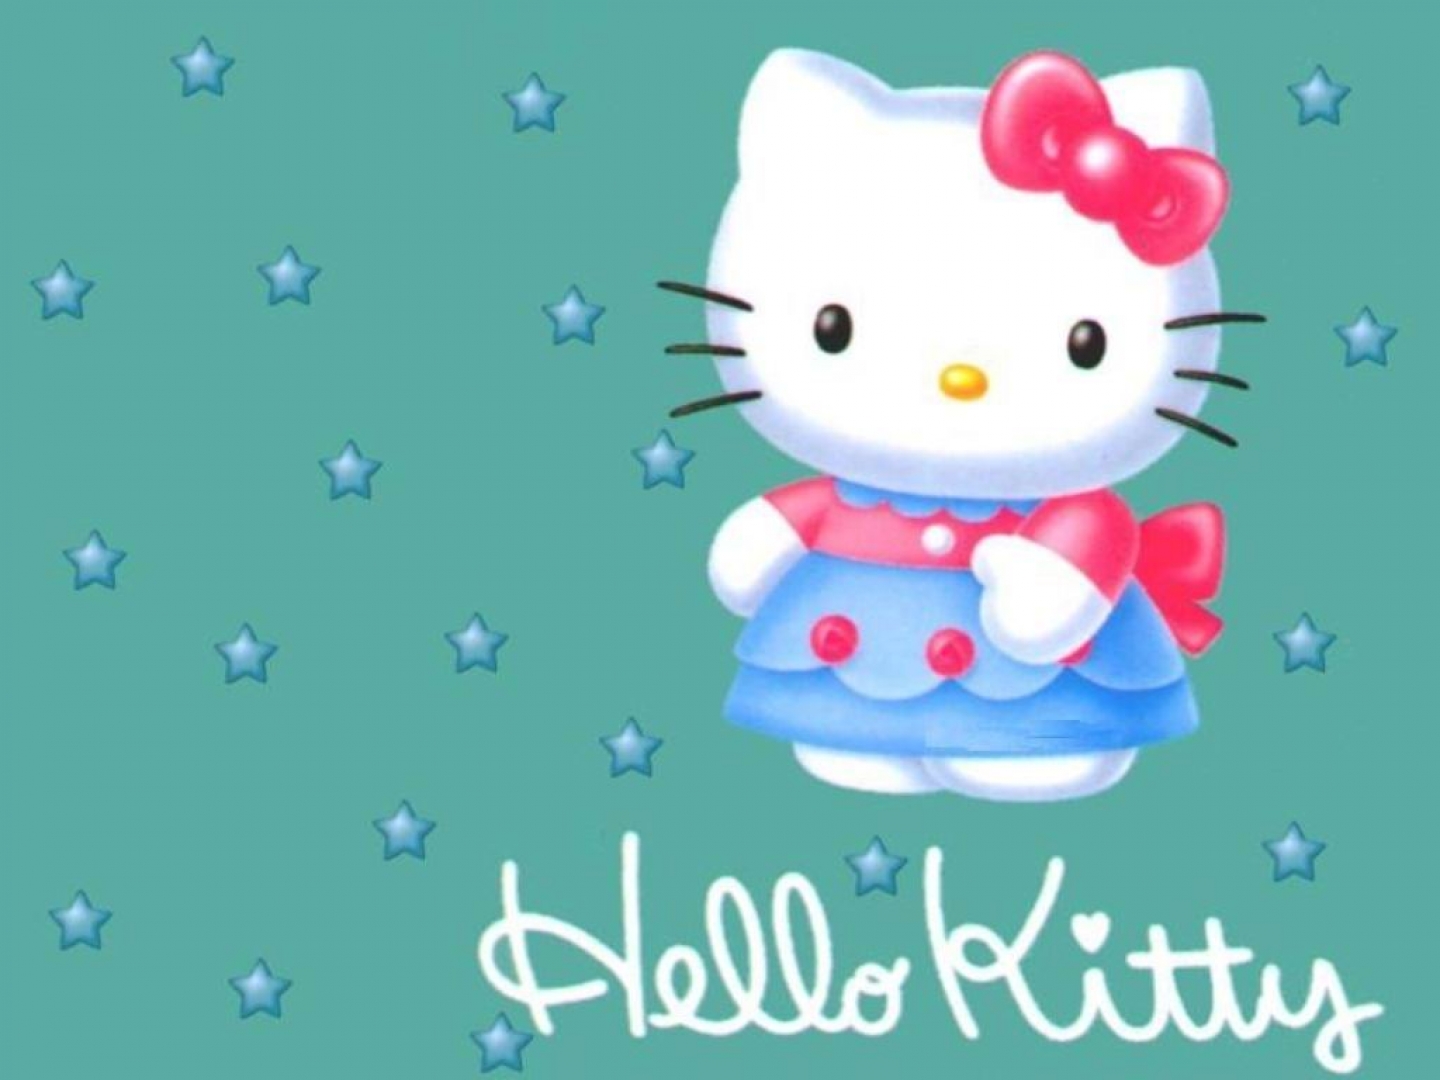 Descargar fondos de escritorio de Hello Kitty HD